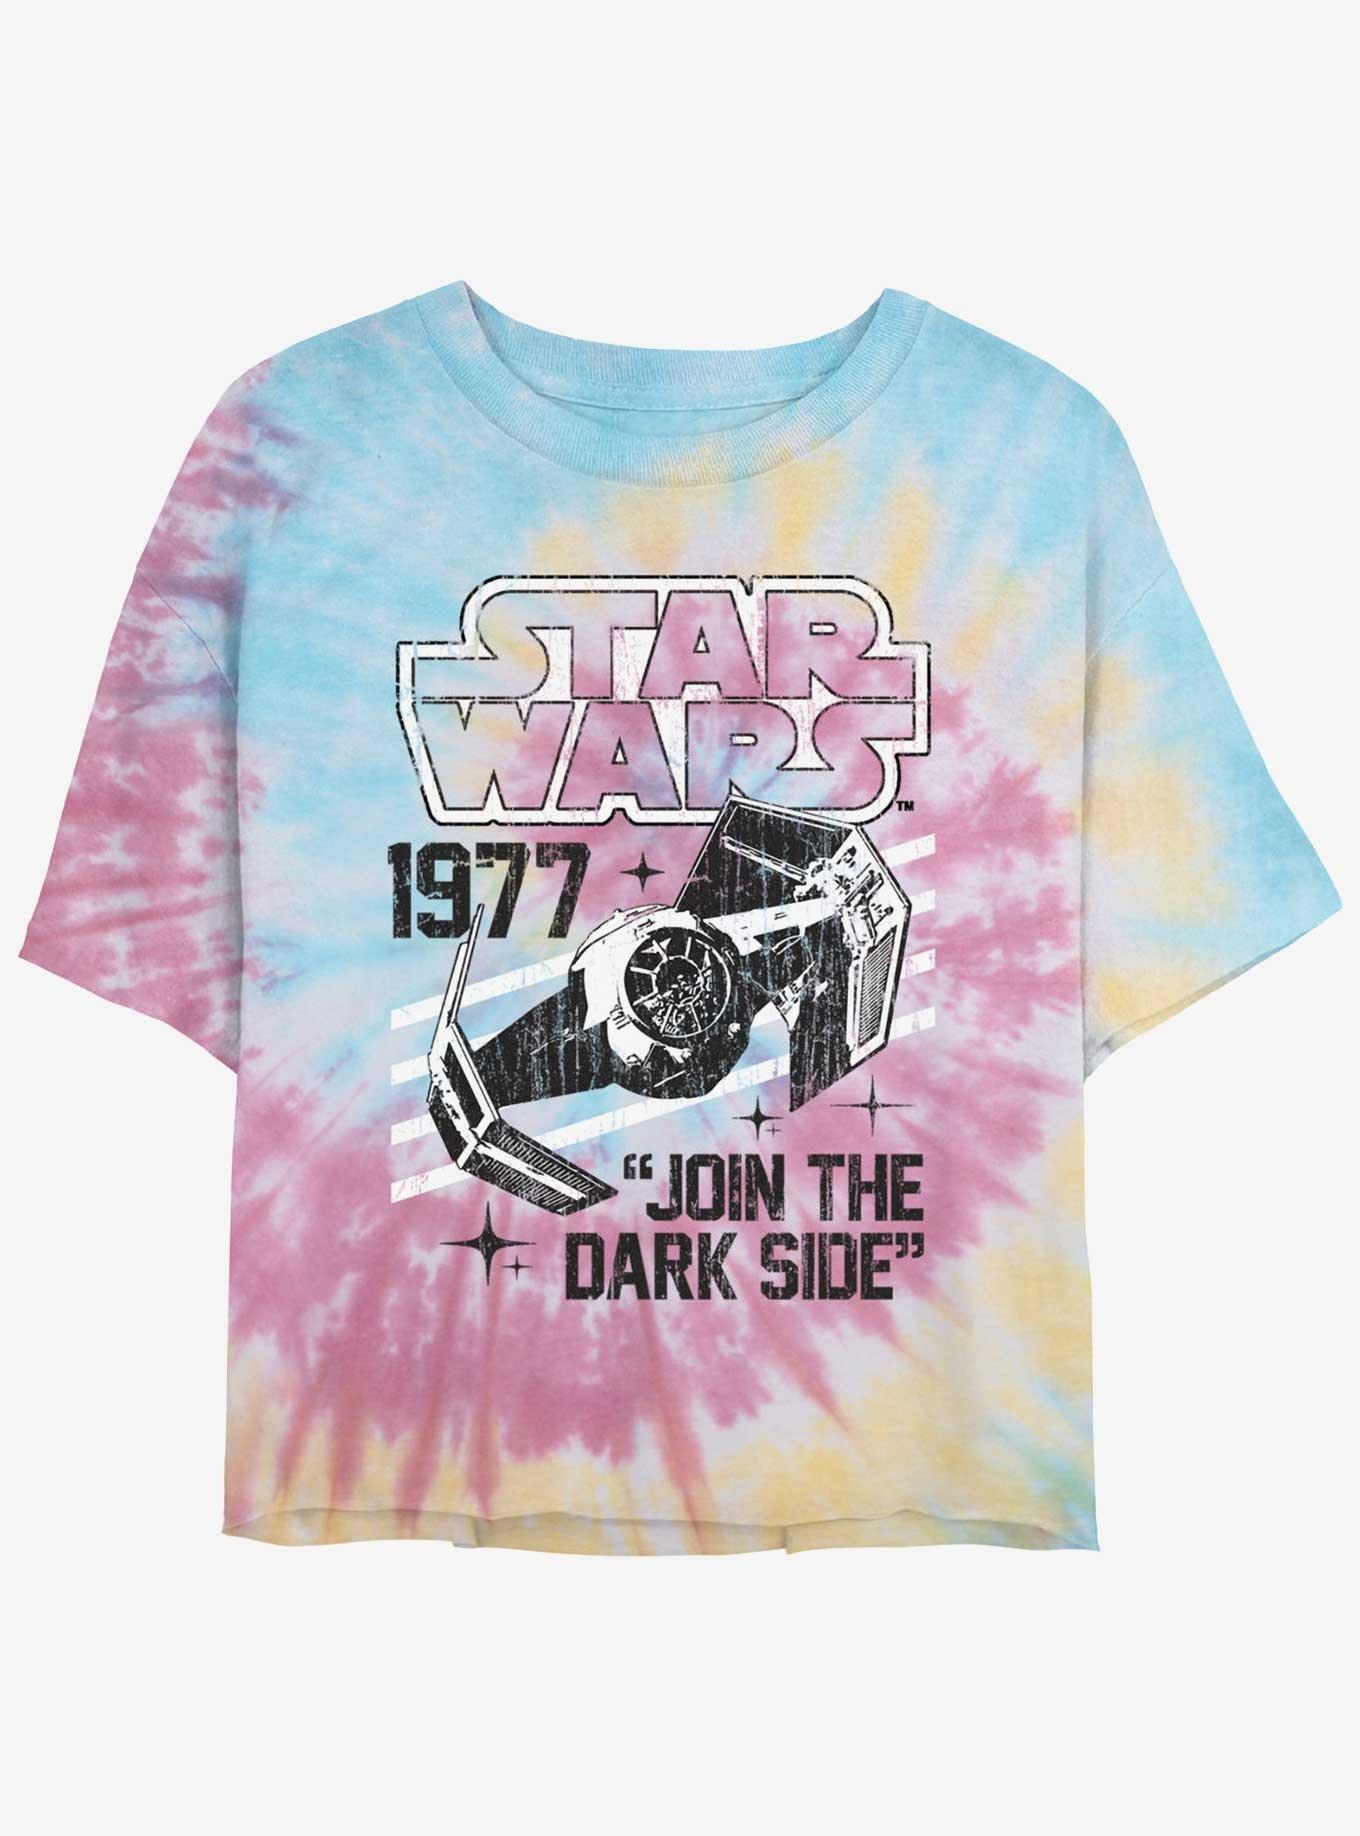 Star Wars Tie-Fighter Join The Dark Side Girls Tie-Dye Crop T-Shirt, BLUPNKLY, hi-res